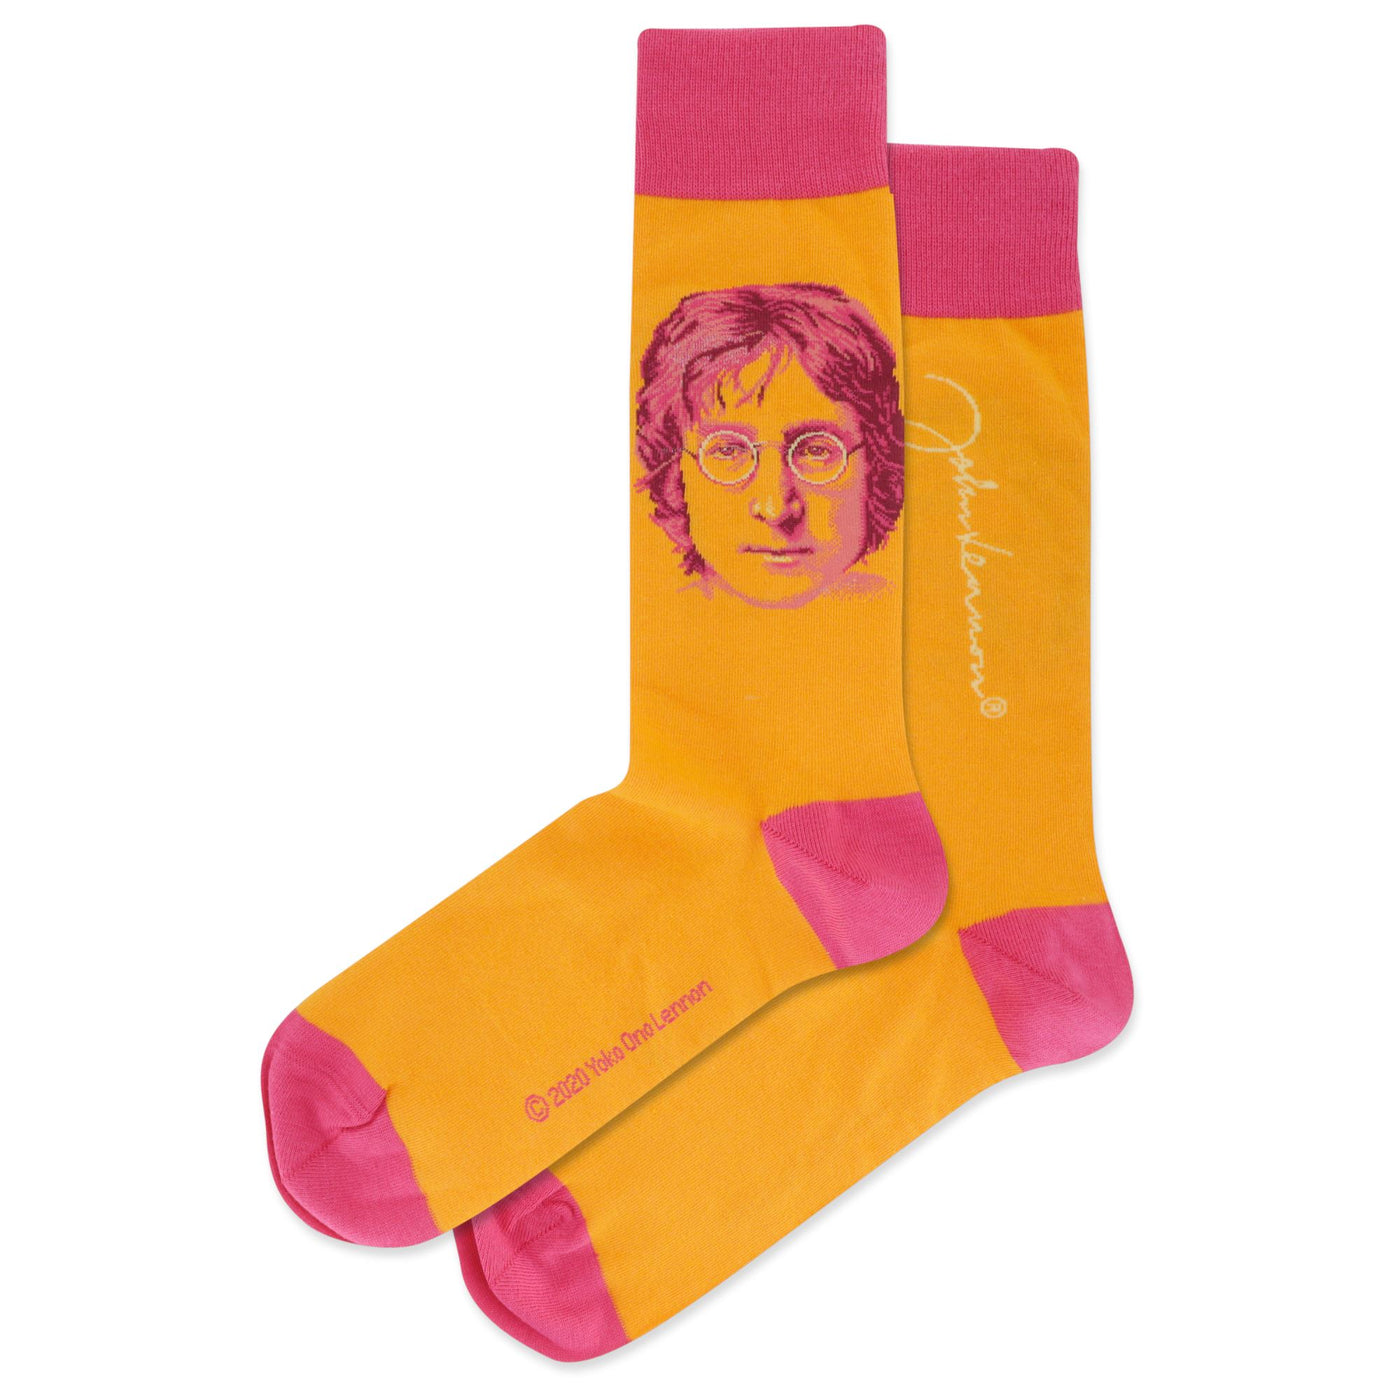 HOT SOX - John Lennon Portrait Crew Socks | Men's - Knock Your Socks Off